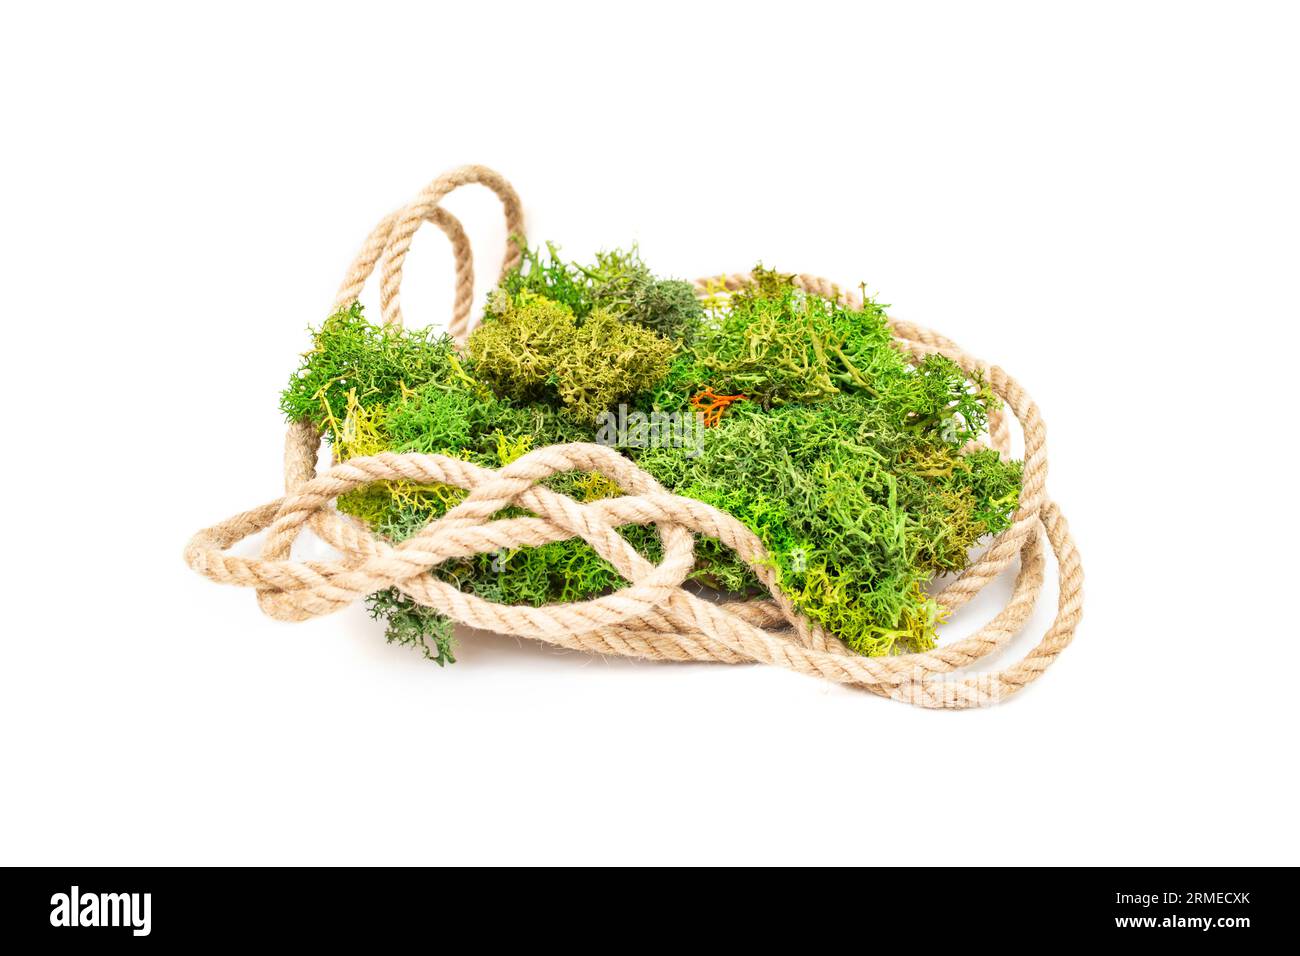 Juteseil mit grünem stabilisiertem Flechten, natürlicher Hintergrund für die Produktdarstellung, isoliert auf weißem Hintergrund Stockfoto